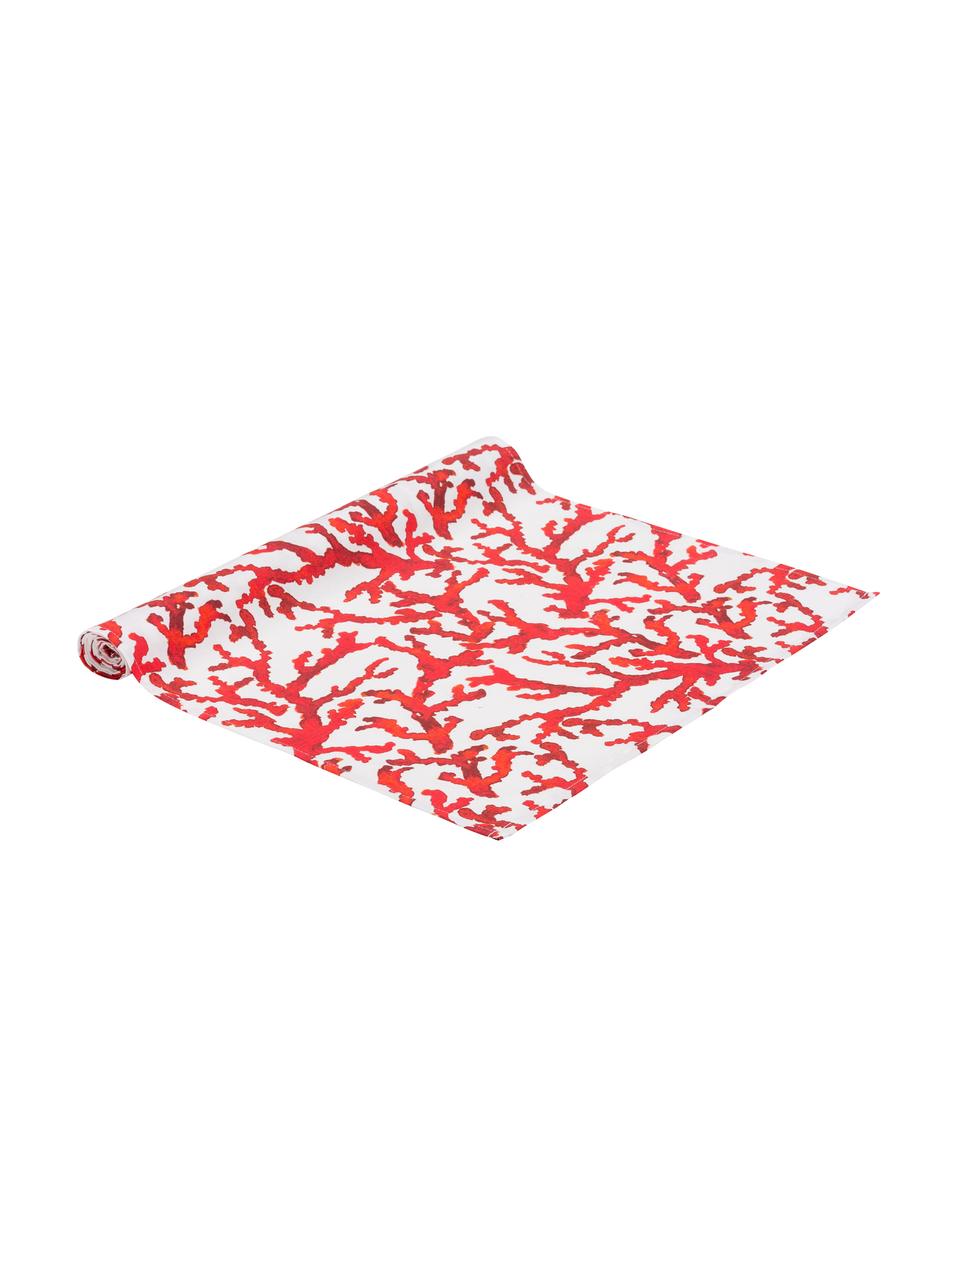 Baumwoll-Tischläufer Estran mit Korallenmotiv, 2 Stück, Baumwolle, Rot, Weiss, 50 x 160 cm